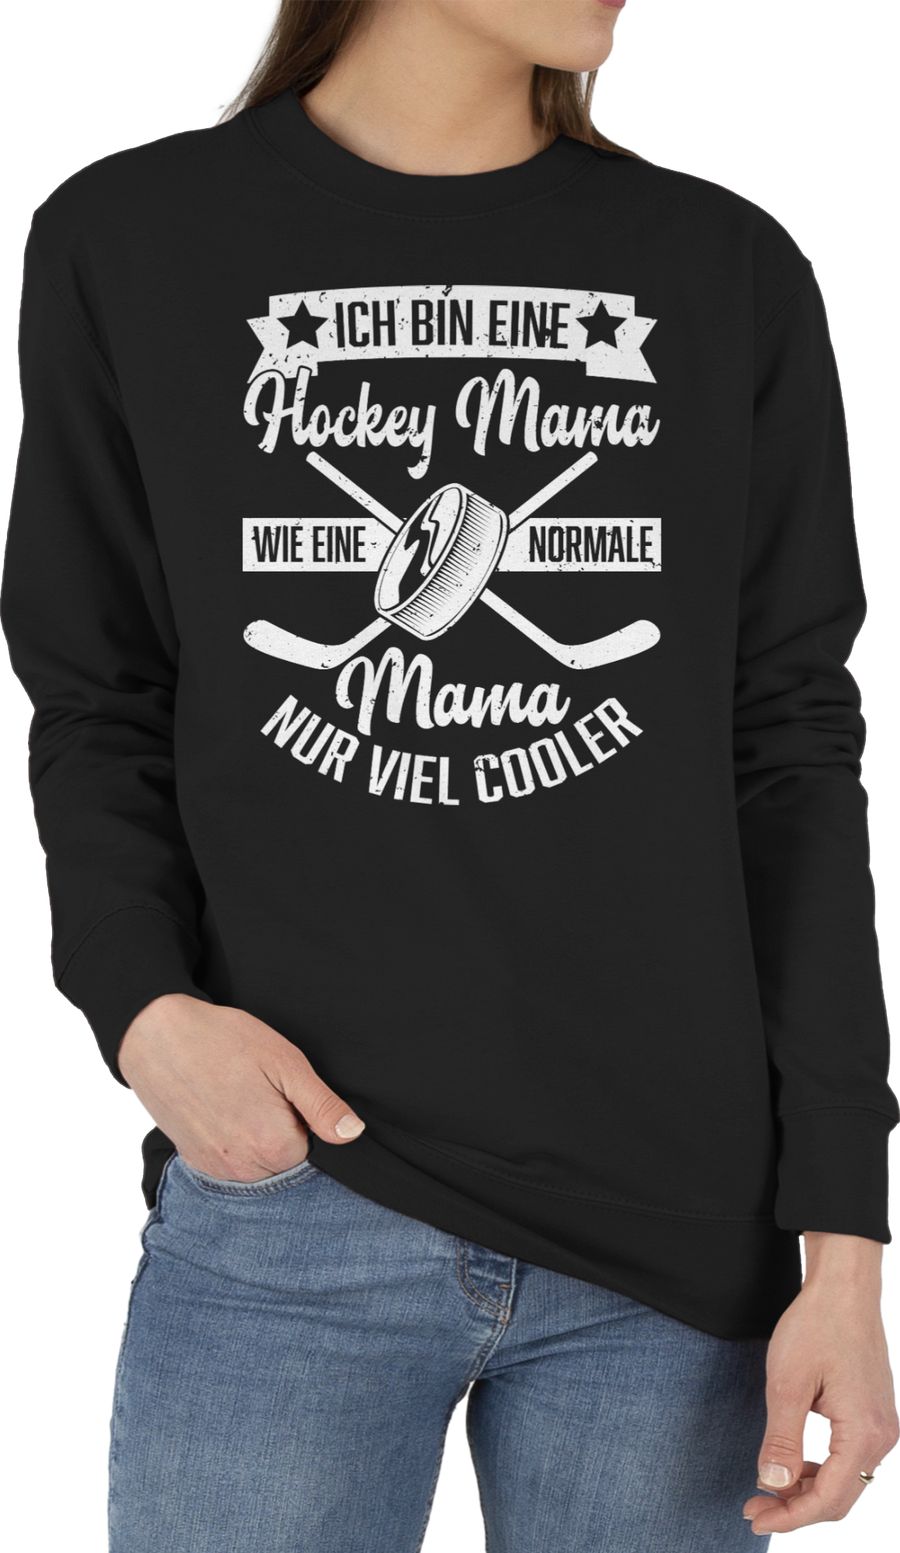 Ich bin eine Hockey Mama - wie eine normale Mama nur viel cooler - weiß